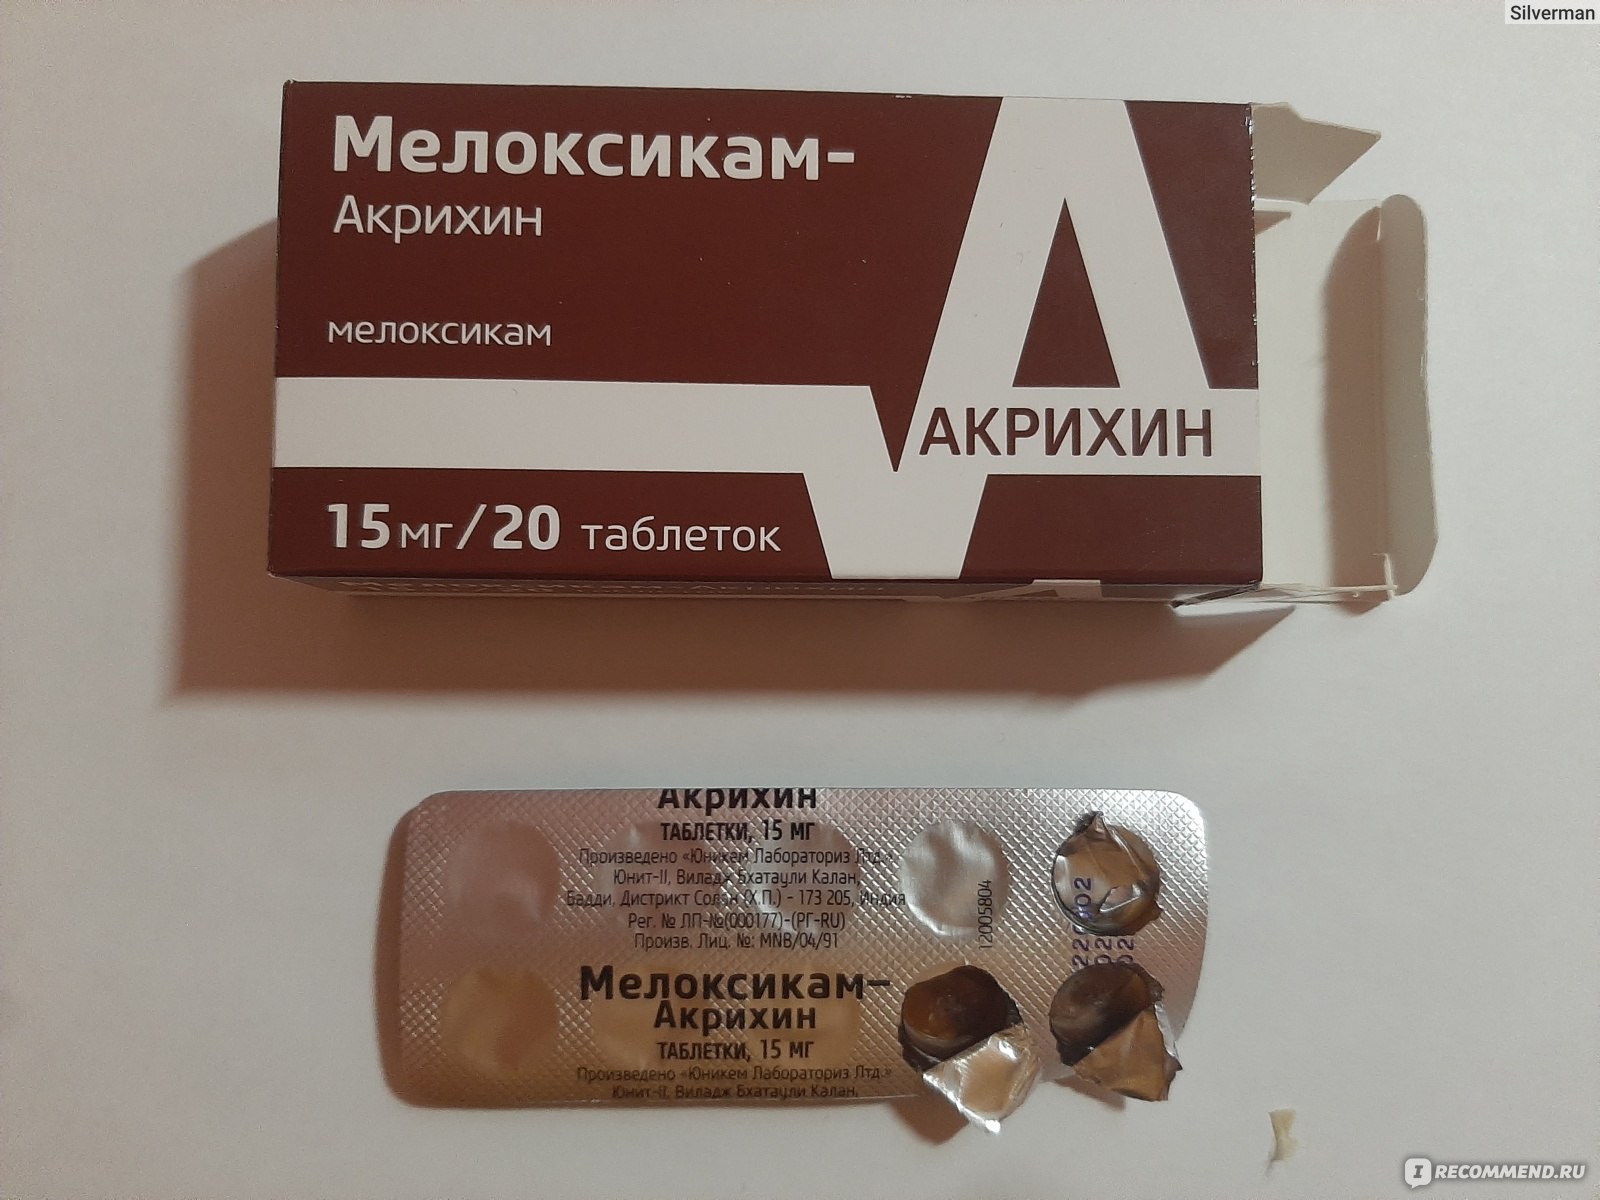 Противовоспалительное средство Акрихин Мелоксикам - «Хорошее средство .